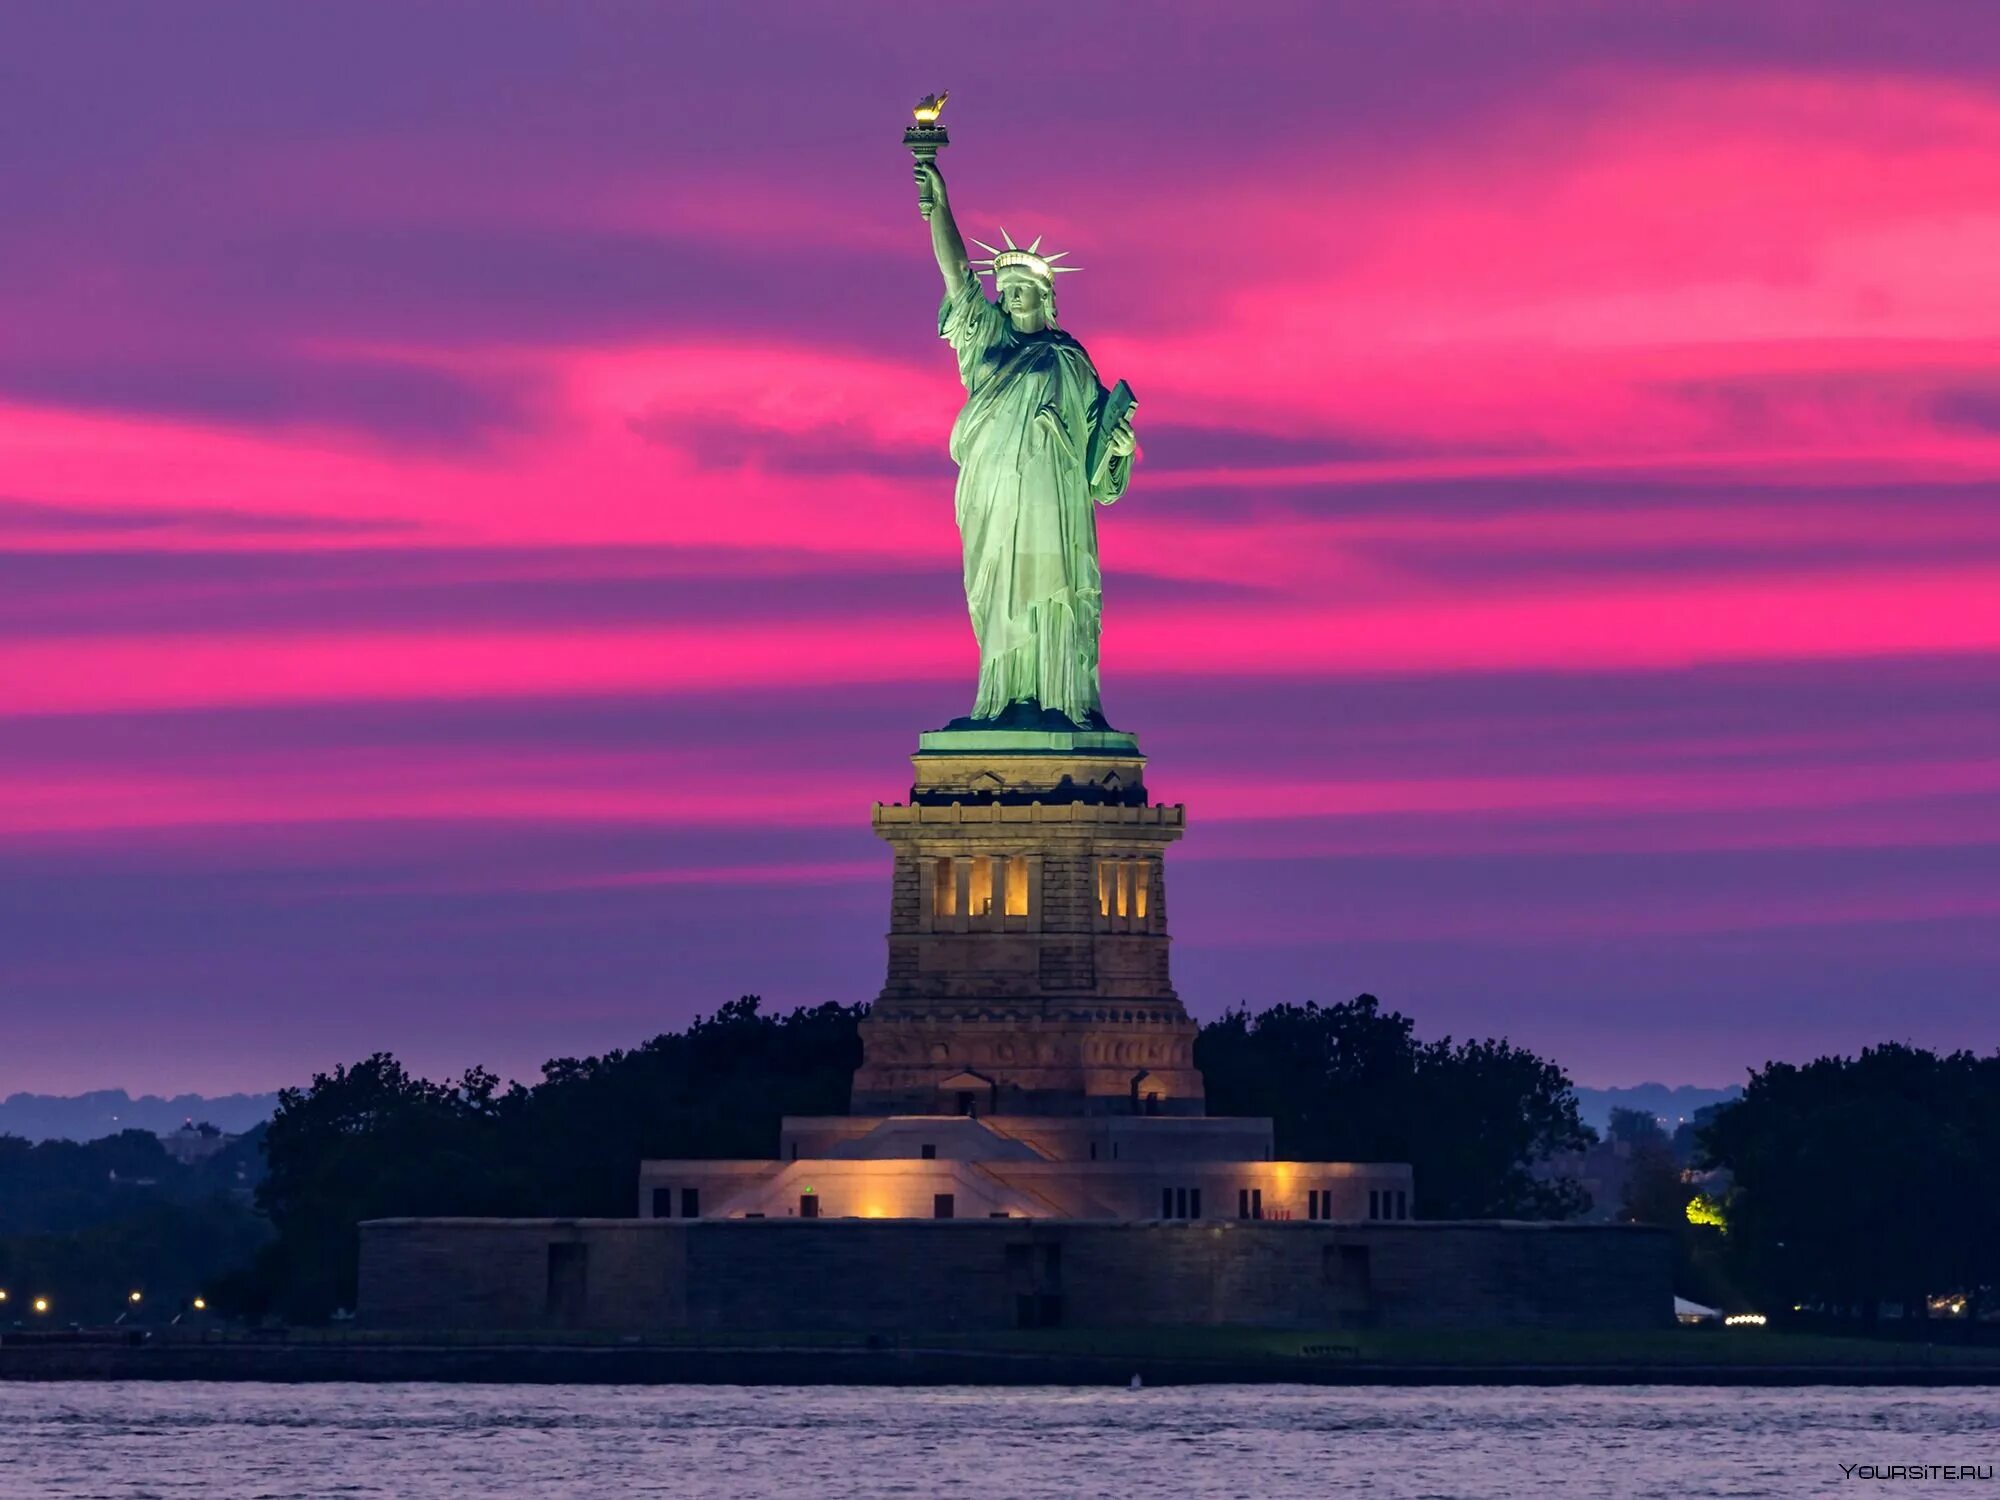 Статуя стран. Статуя свободы США. США Нью-Йорк статуя свободы. Национальный монумент «статуя свободы», Нью-Йорк. Достопримечательности Америки статуя свободы.